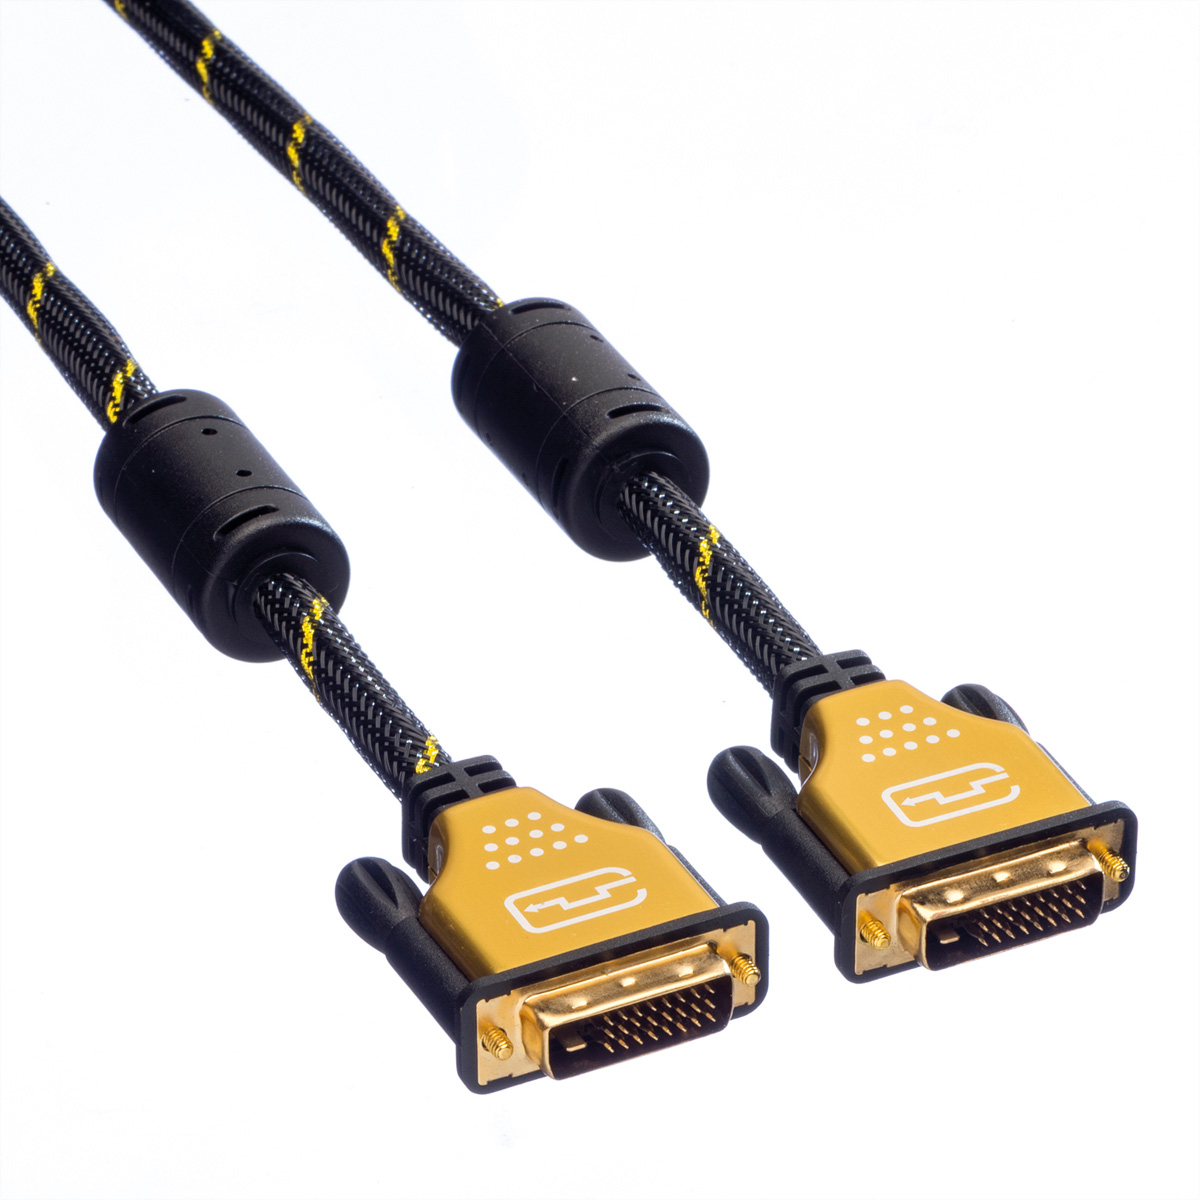 ROLINE GOLD Monitorkabel DVI, DVI-Kabel (dual ST-ST, m dual (24+1) link, link), 3